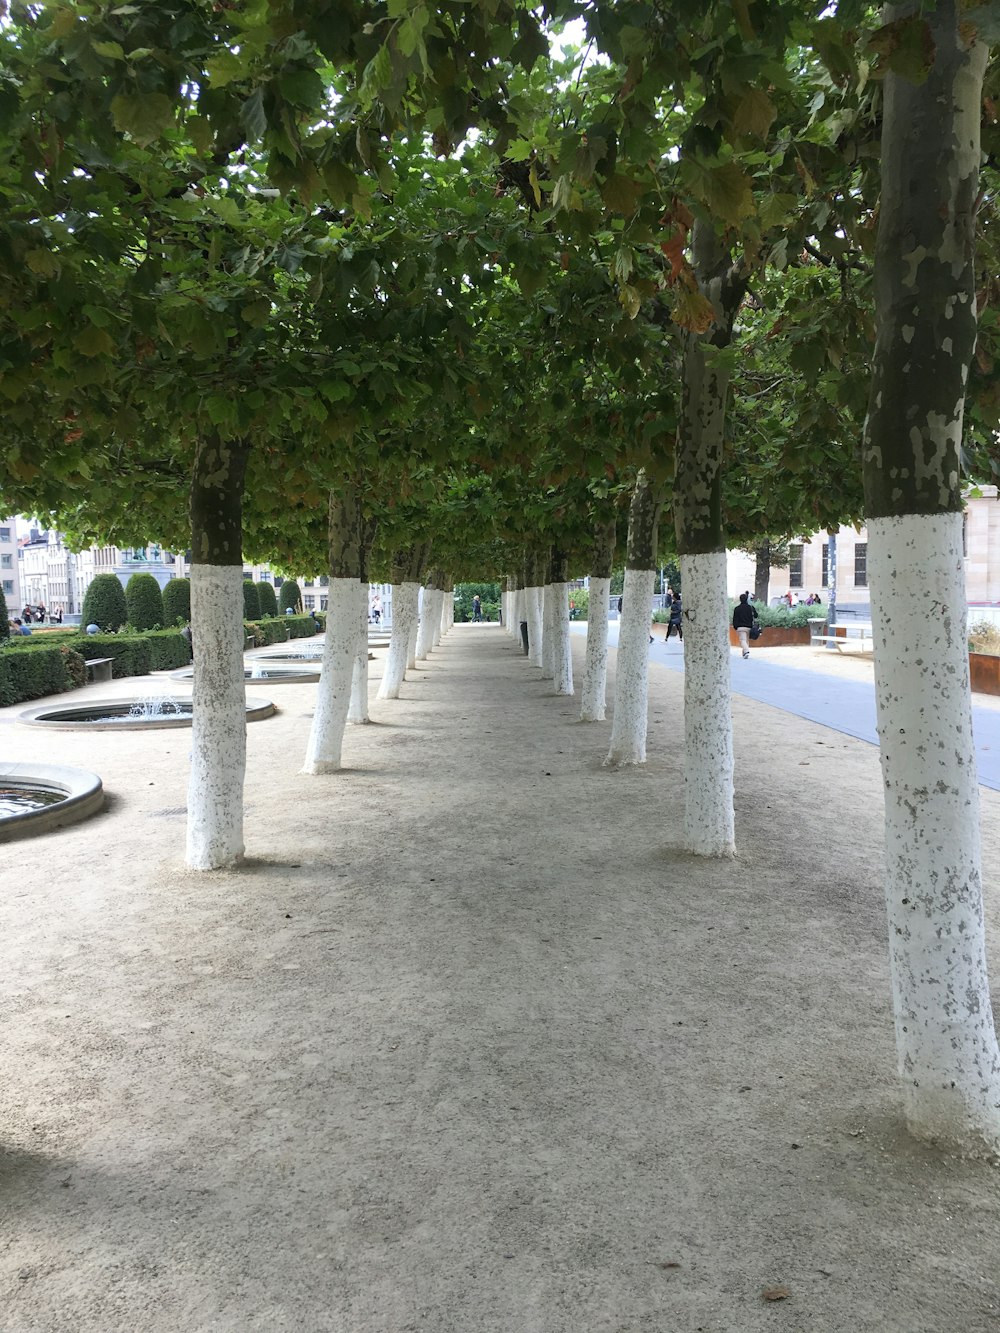 árboles verdes en suelo de concreto gris durante el día